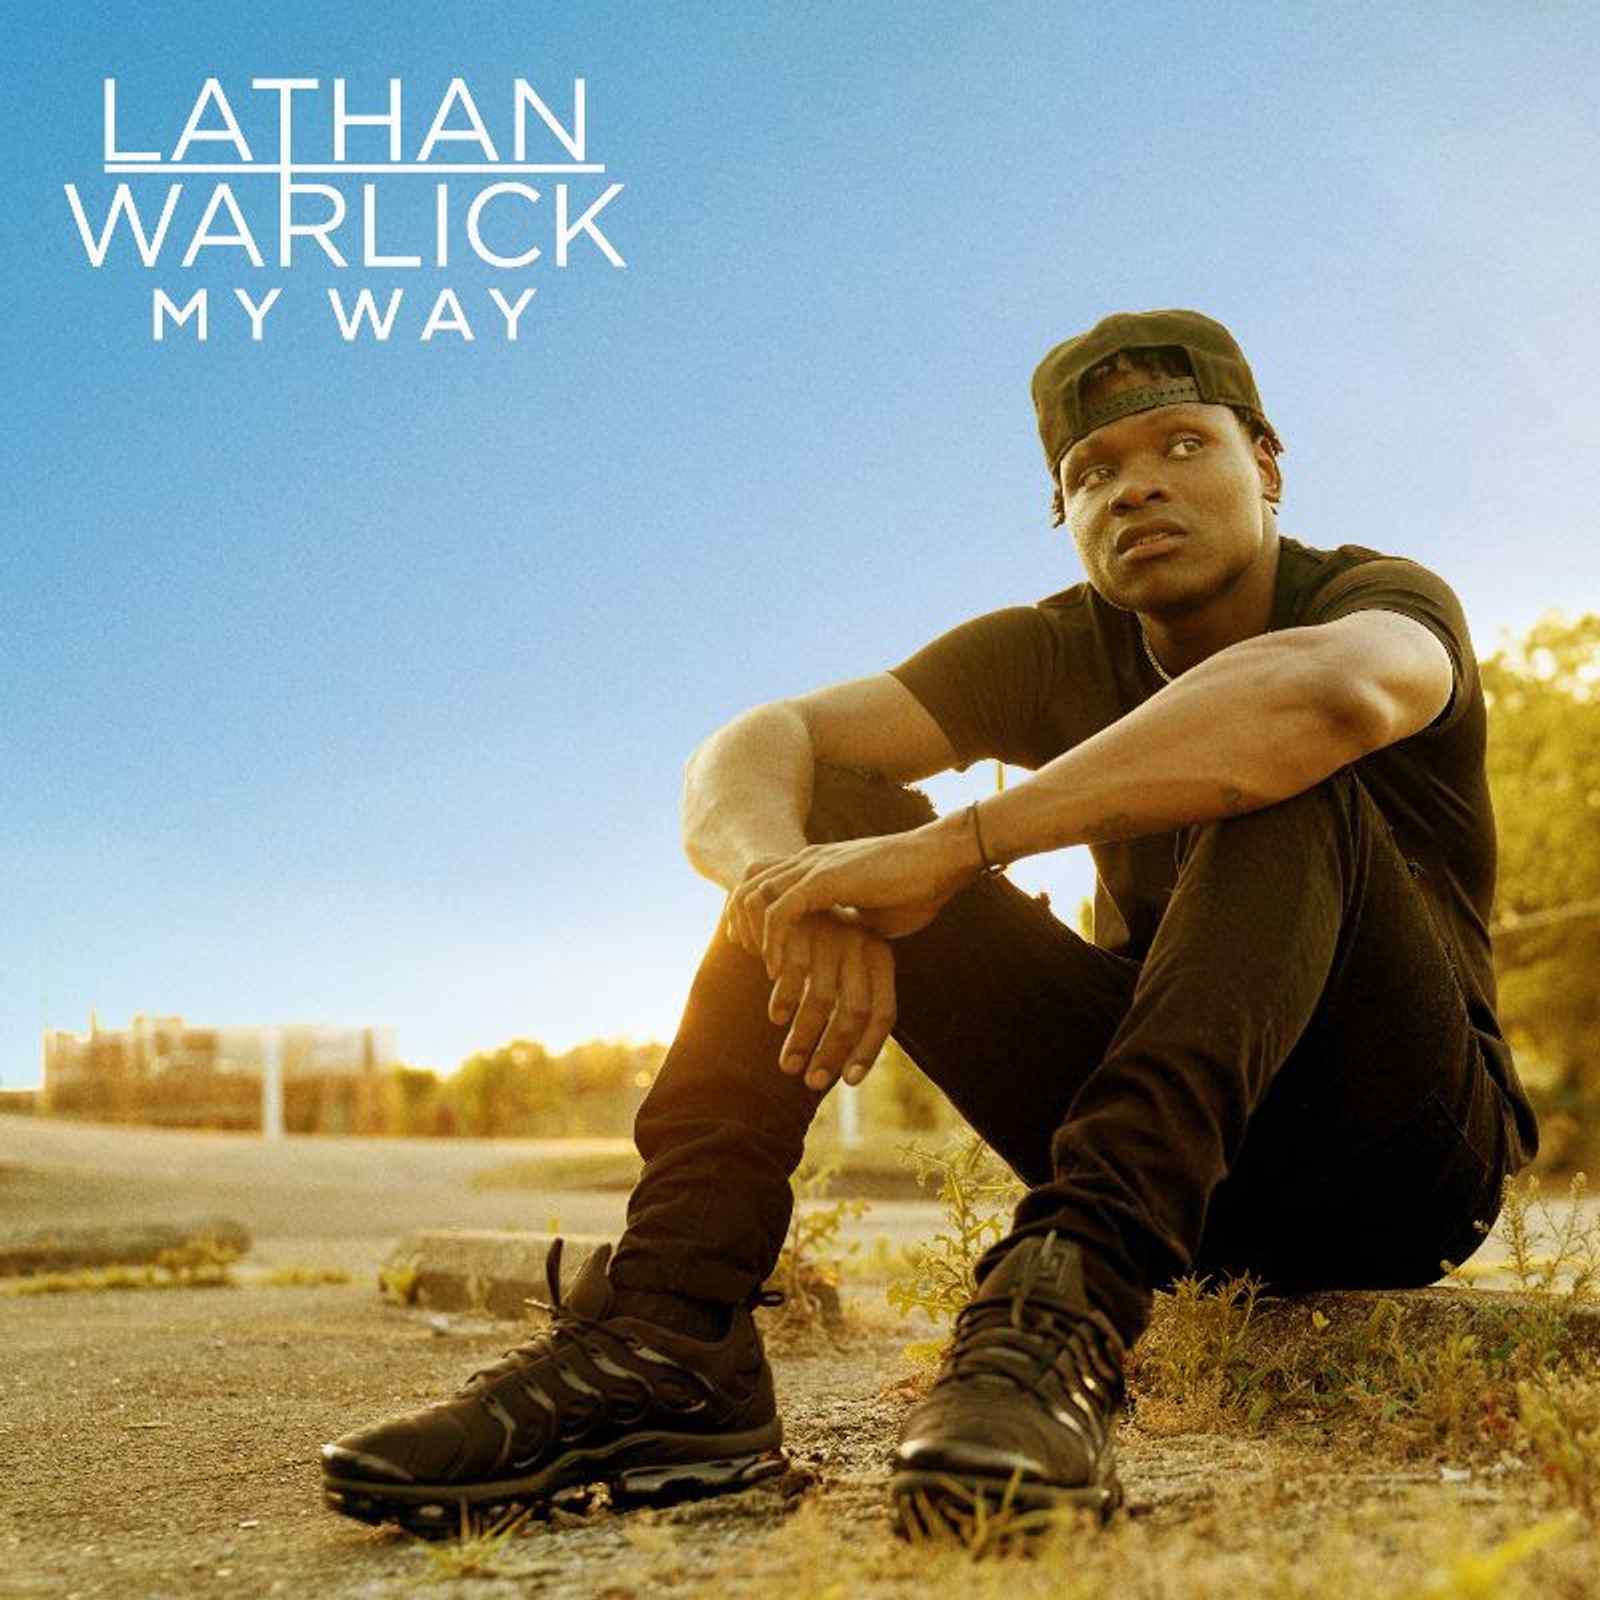 My Way EP by Lathan Warlick